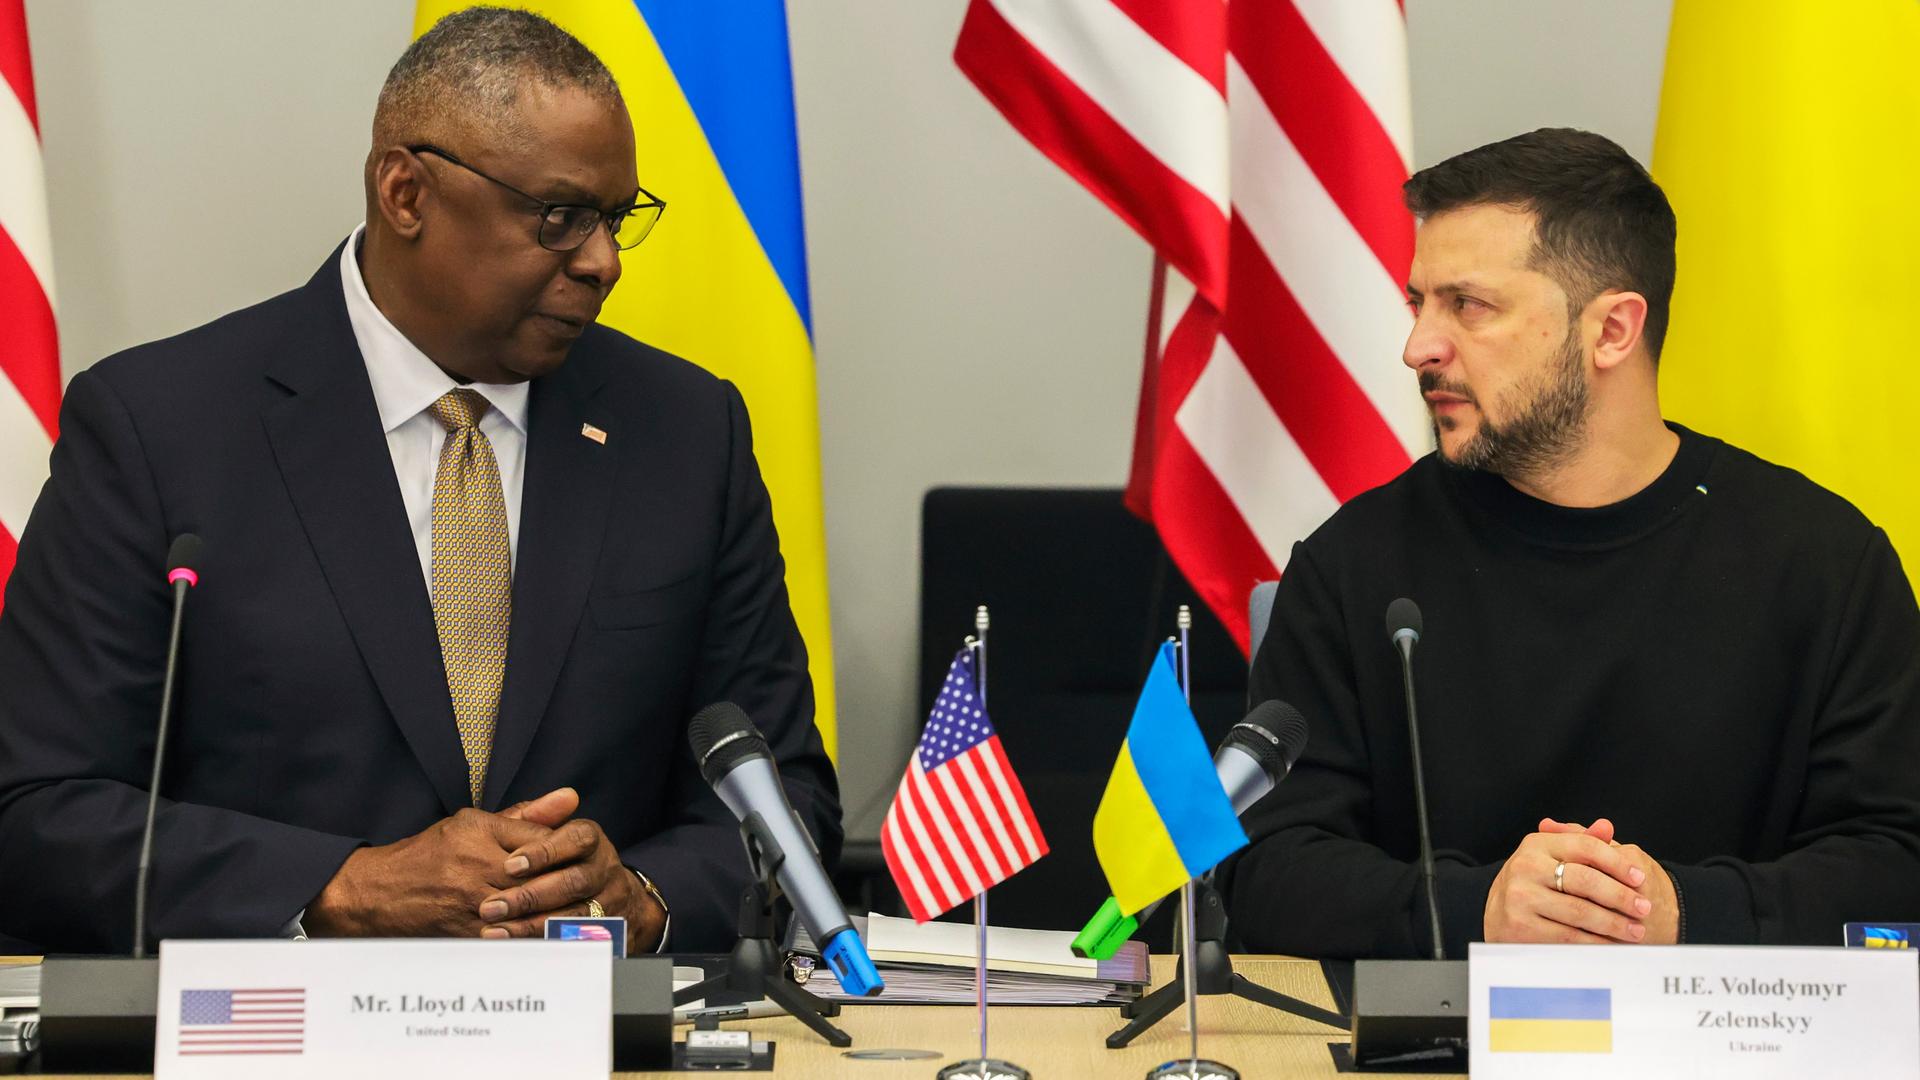 US-Verteidigungsminister Austin und der ukrainische Präsident Selenskyj sitzen nebeneinander vor Mikrofonen. Vor ihnen stehen ihre Namensschilder und die Landesfahnen.